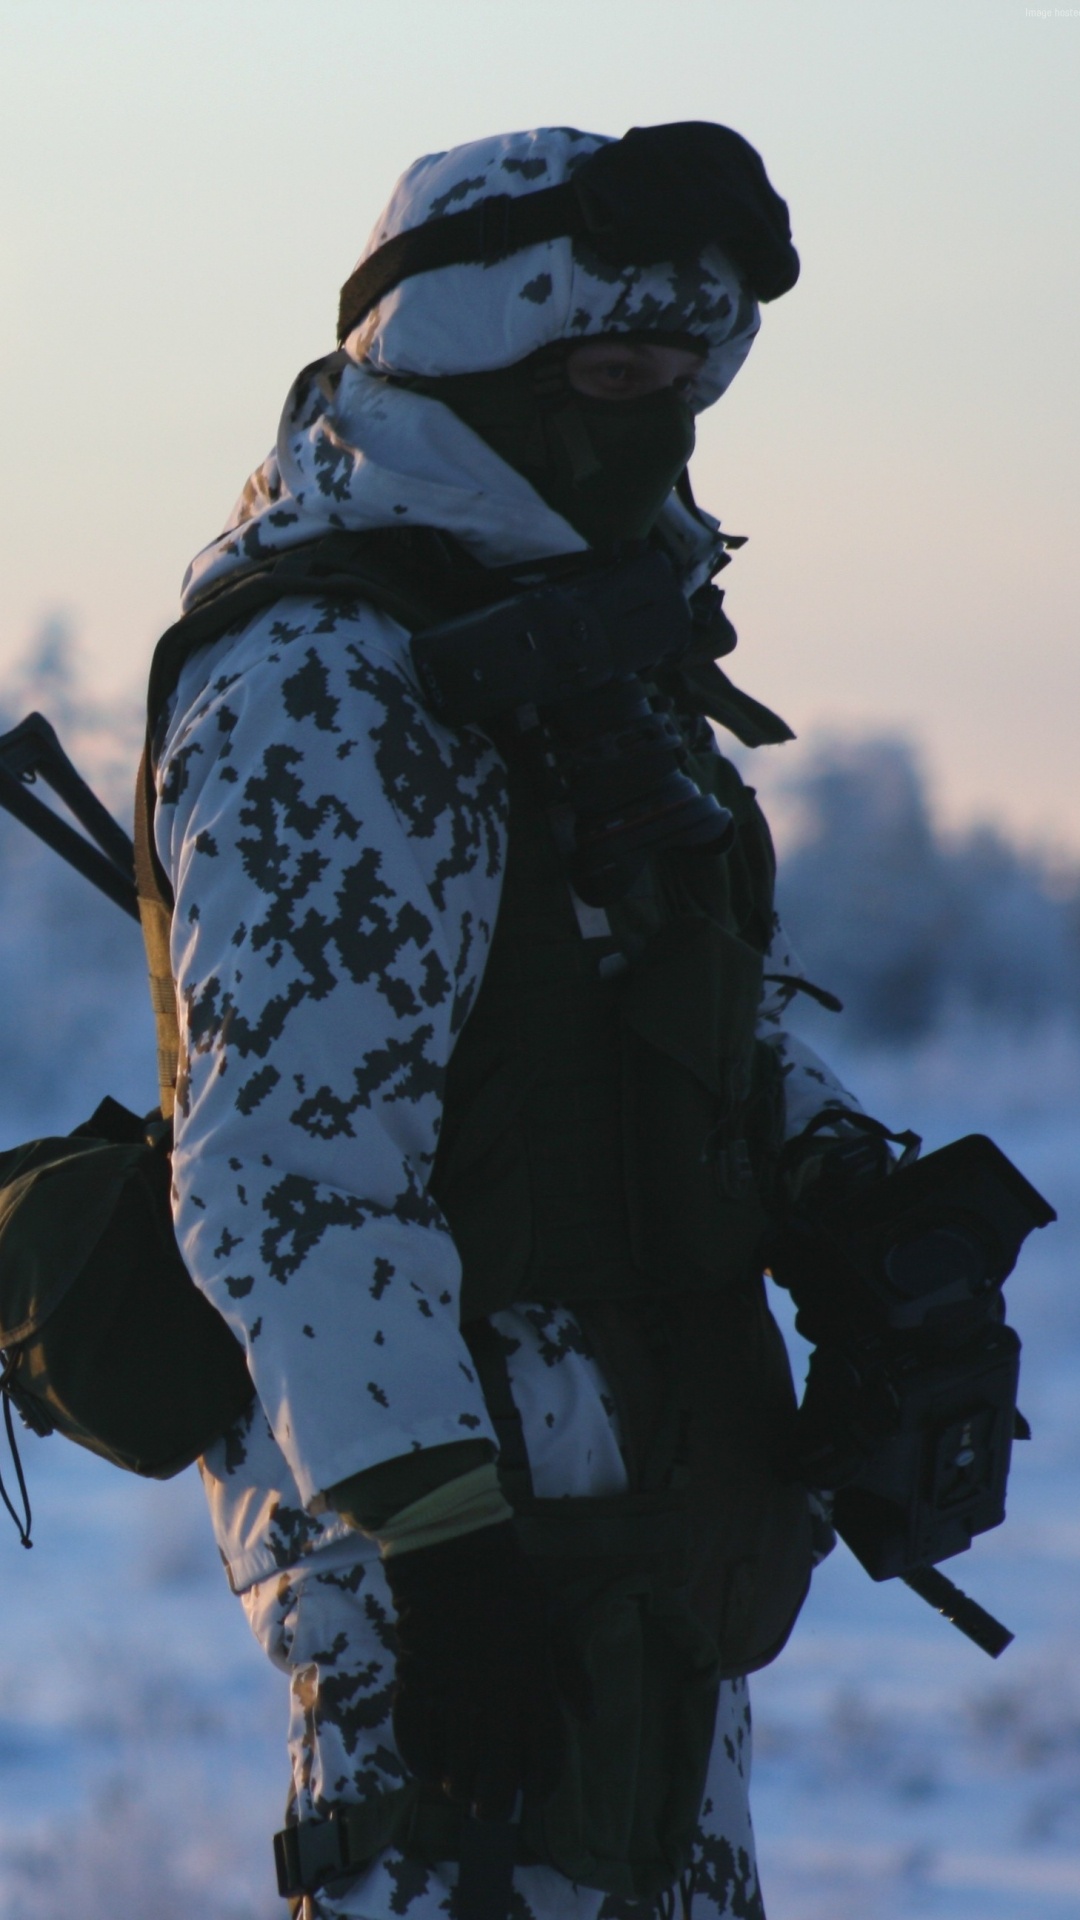 Soldat, Neige, Hiver, Congélation, de L'arctique. Wallpaper in 1080x1920 Resolution